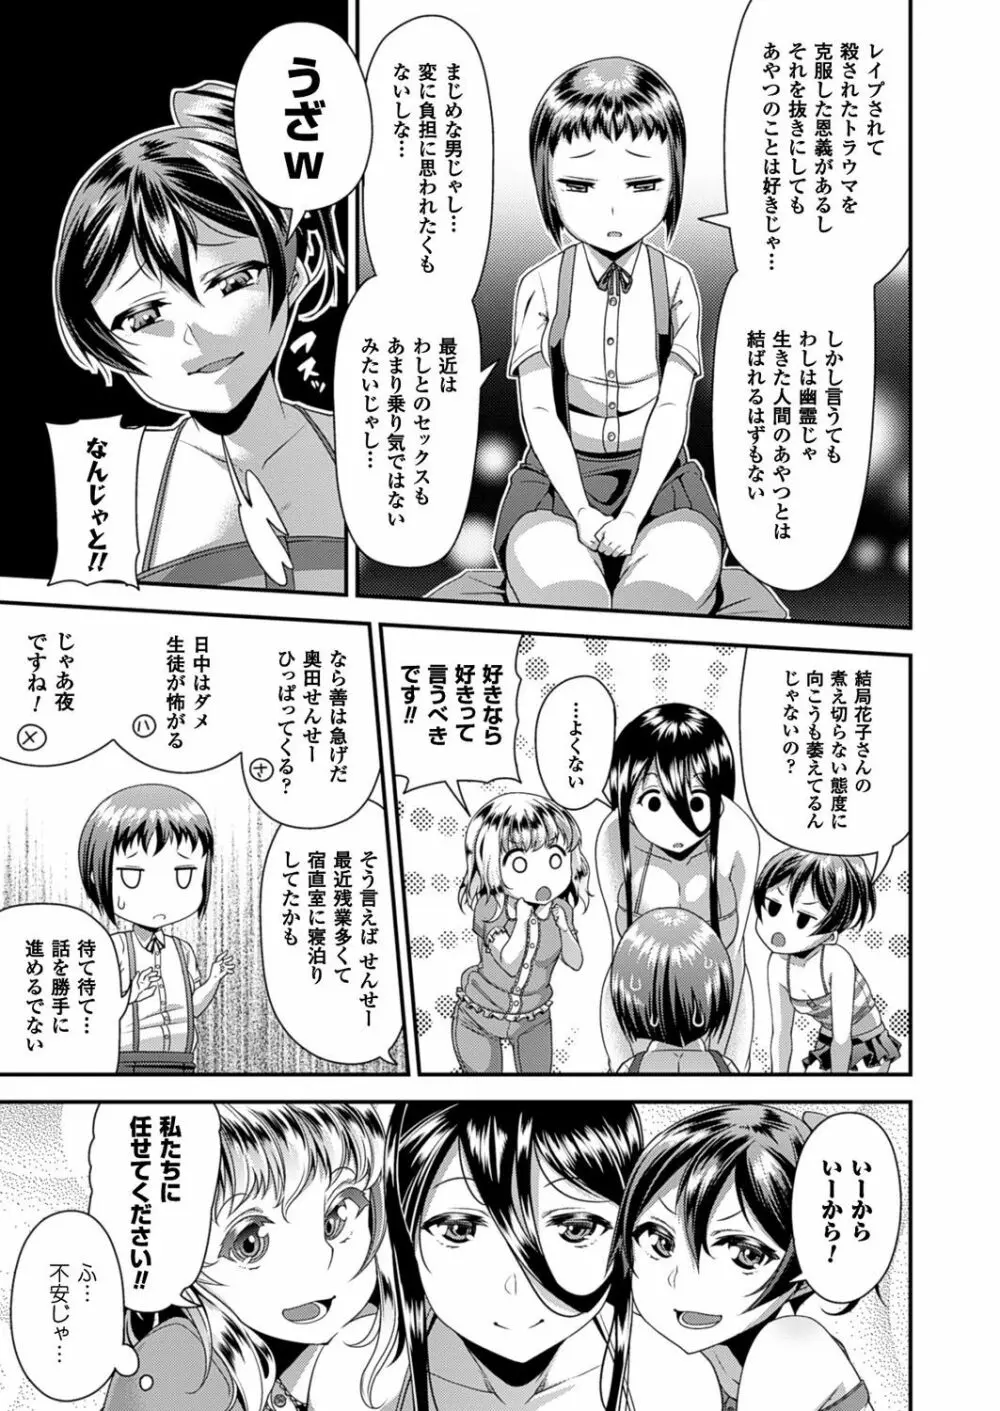 Toshi Densetsu Series Ch. 01-03 42ページ